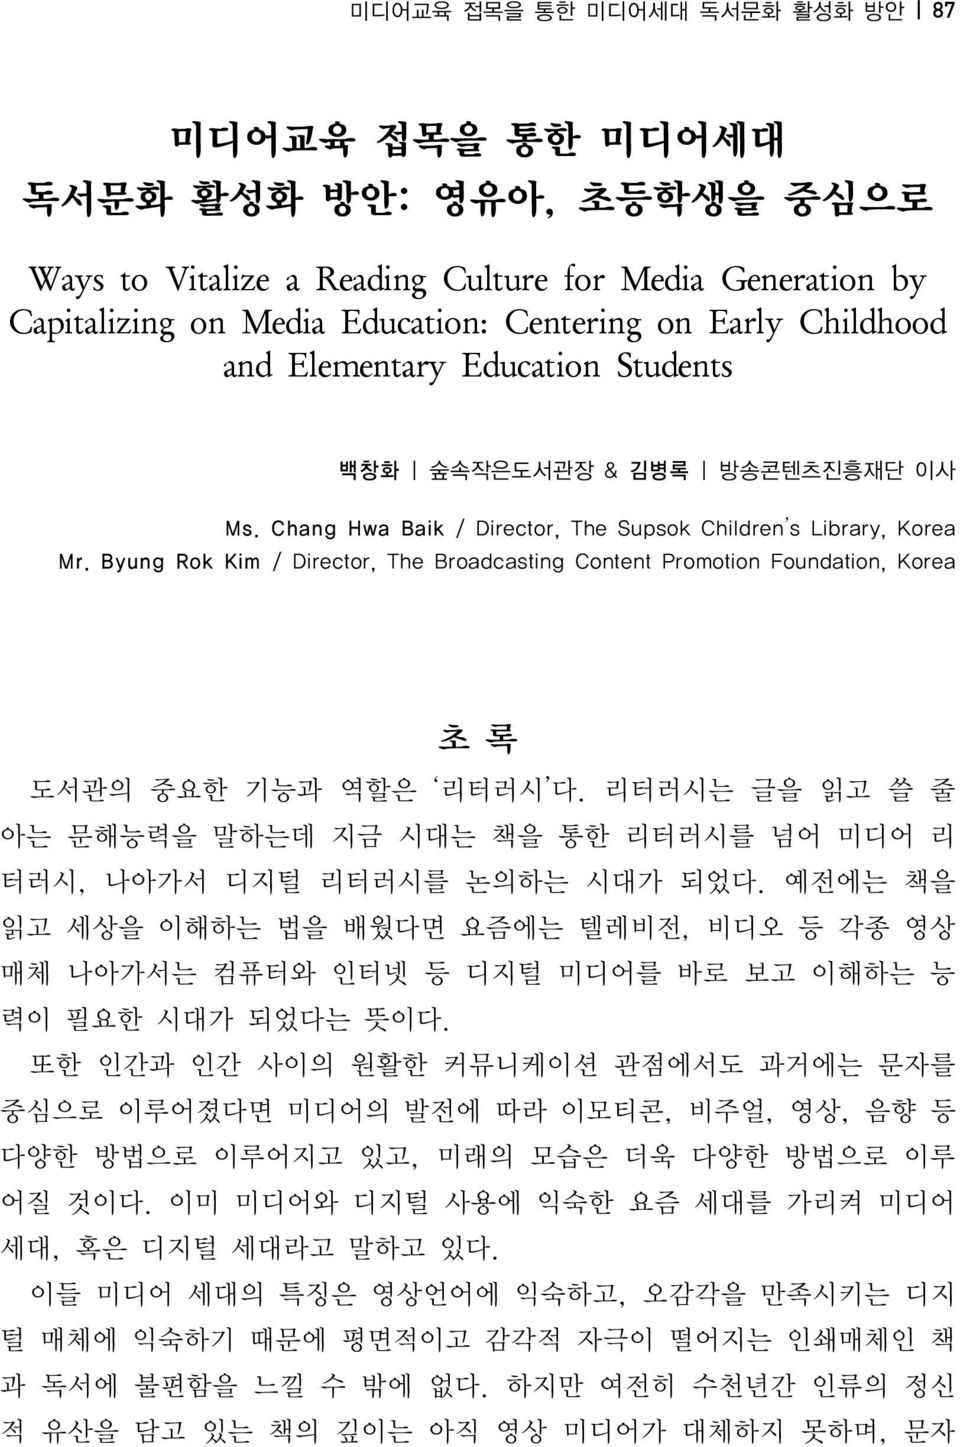 Byung Rok Kim / Director, The Broadcasting Content Promotion Foundation, Korea 초록 도서관의 중요한 기능과 역할은 리터러시 다. 리터러시는 글을 읽고 쓸 줄 아는 문해능력을 말하는데 지금 시대는 책을 통한 리터러시를 넘어 미디어 리 터러시, 나아가서 디지털 리터러시를 논의하는 시대가 되었다.